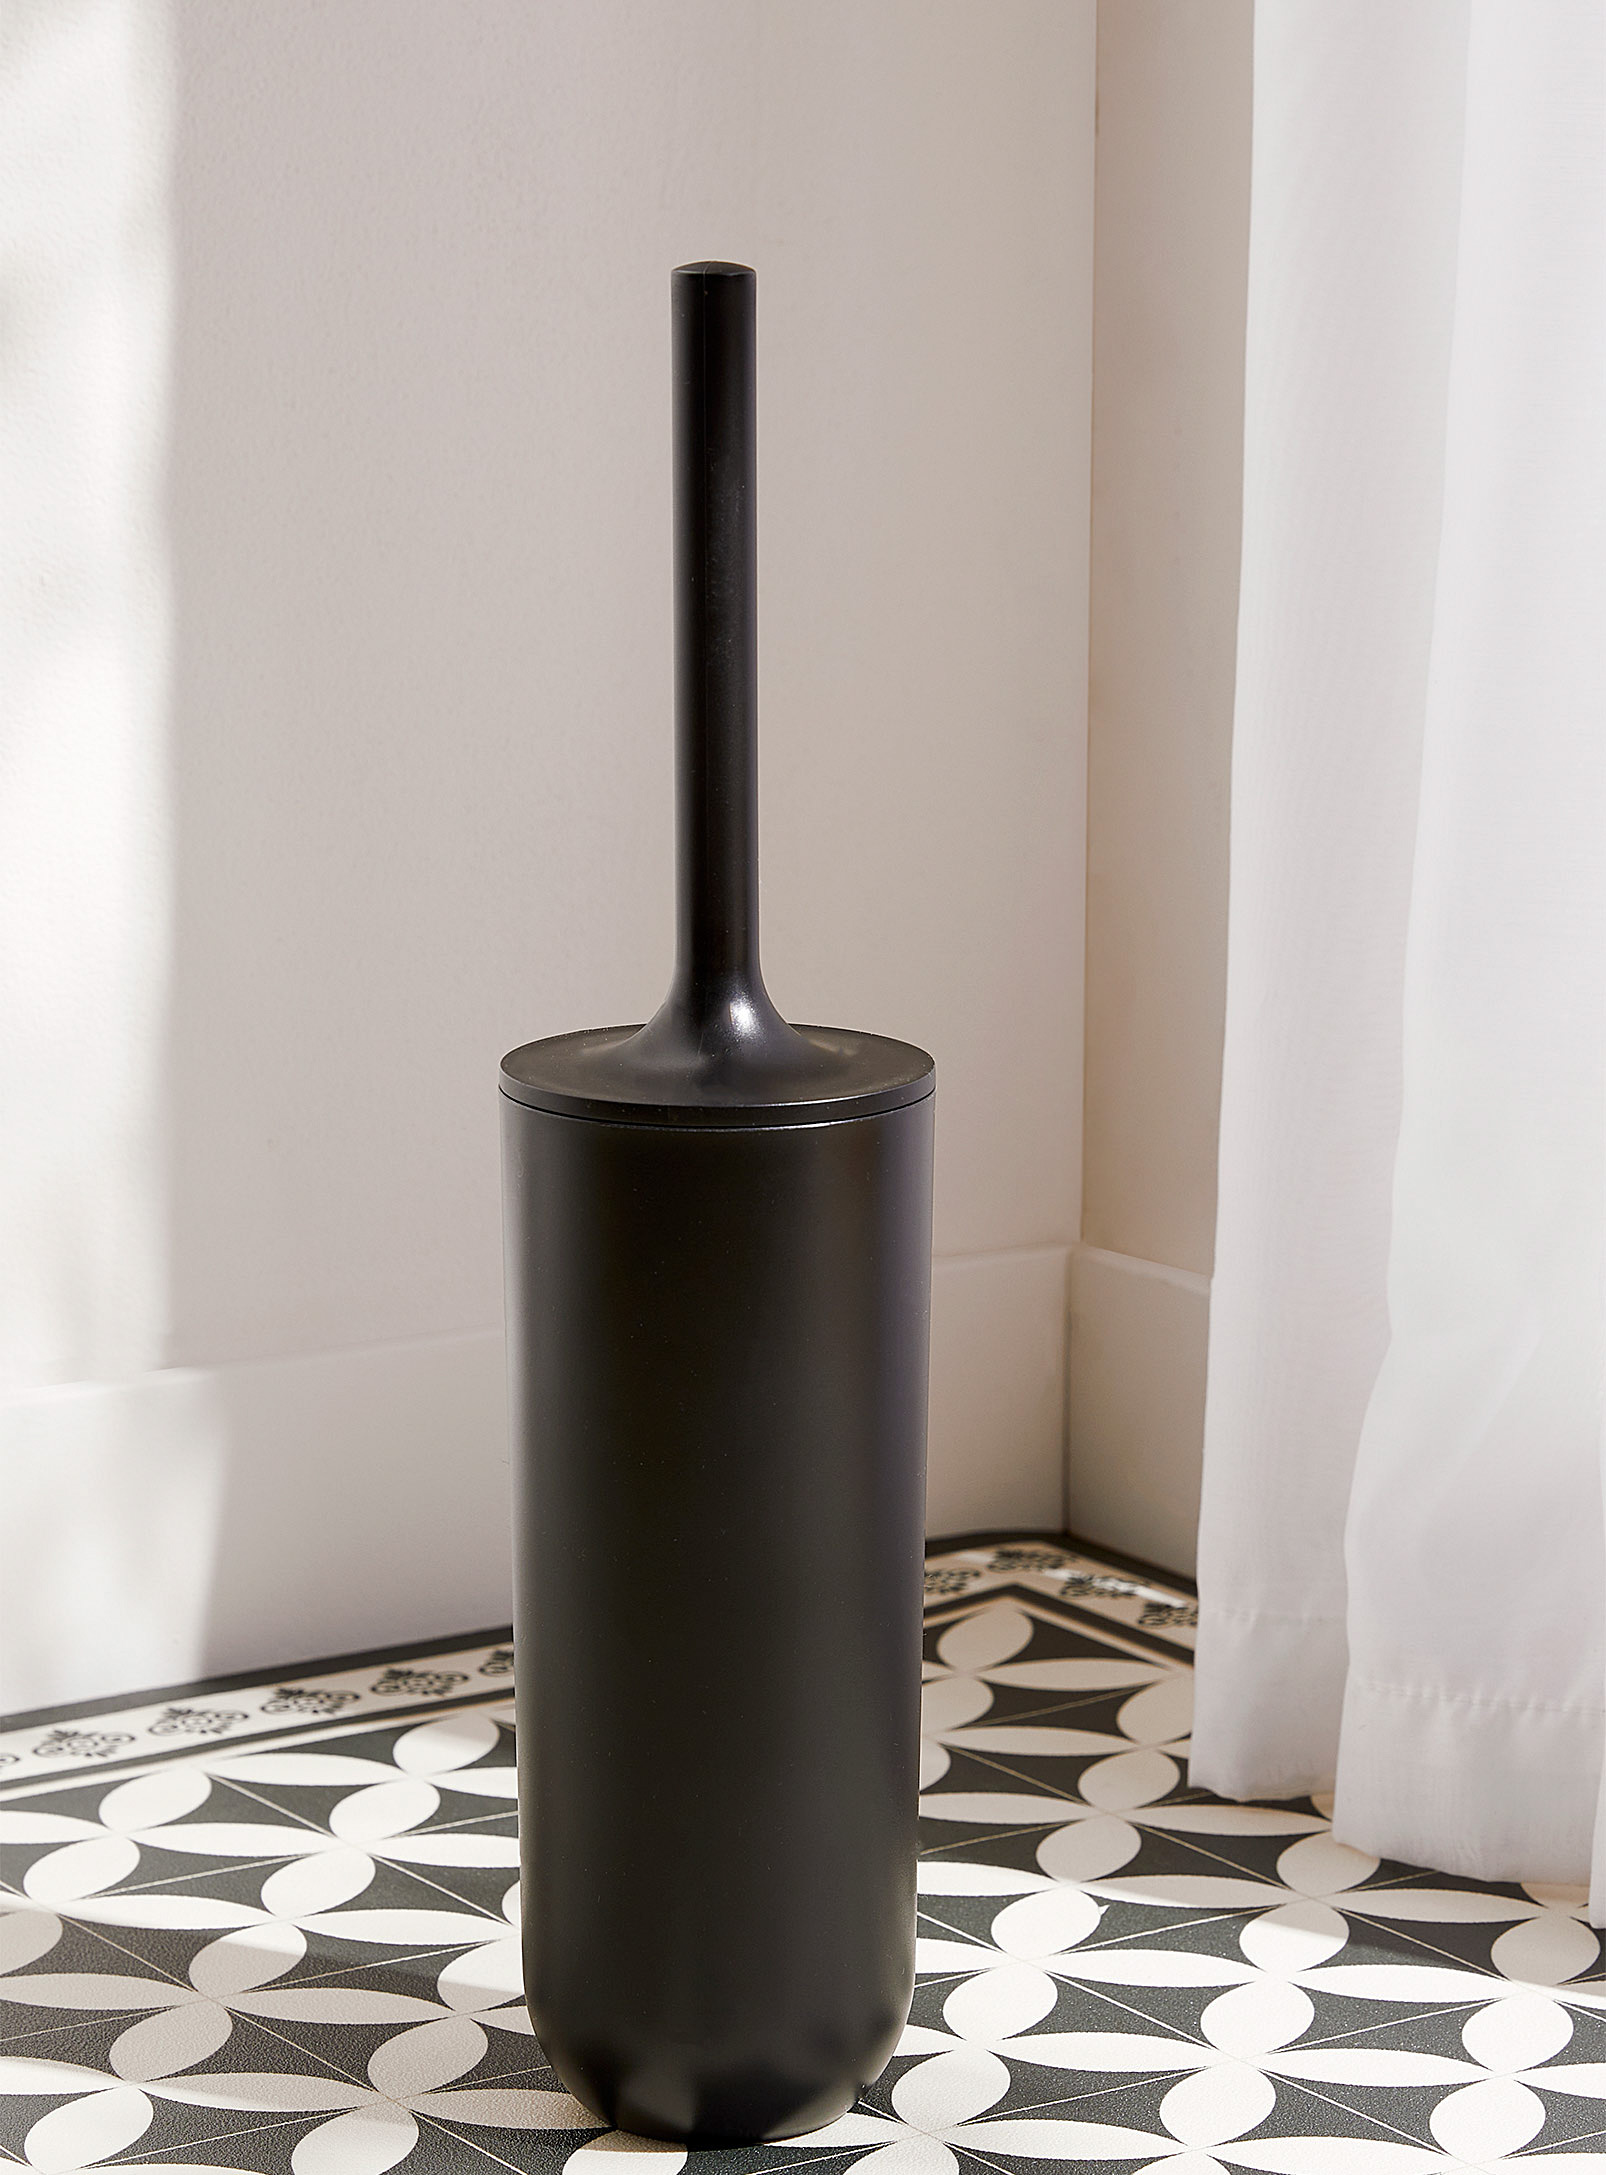 Simons Maison Modern Minimalist Toilet Brush In Black